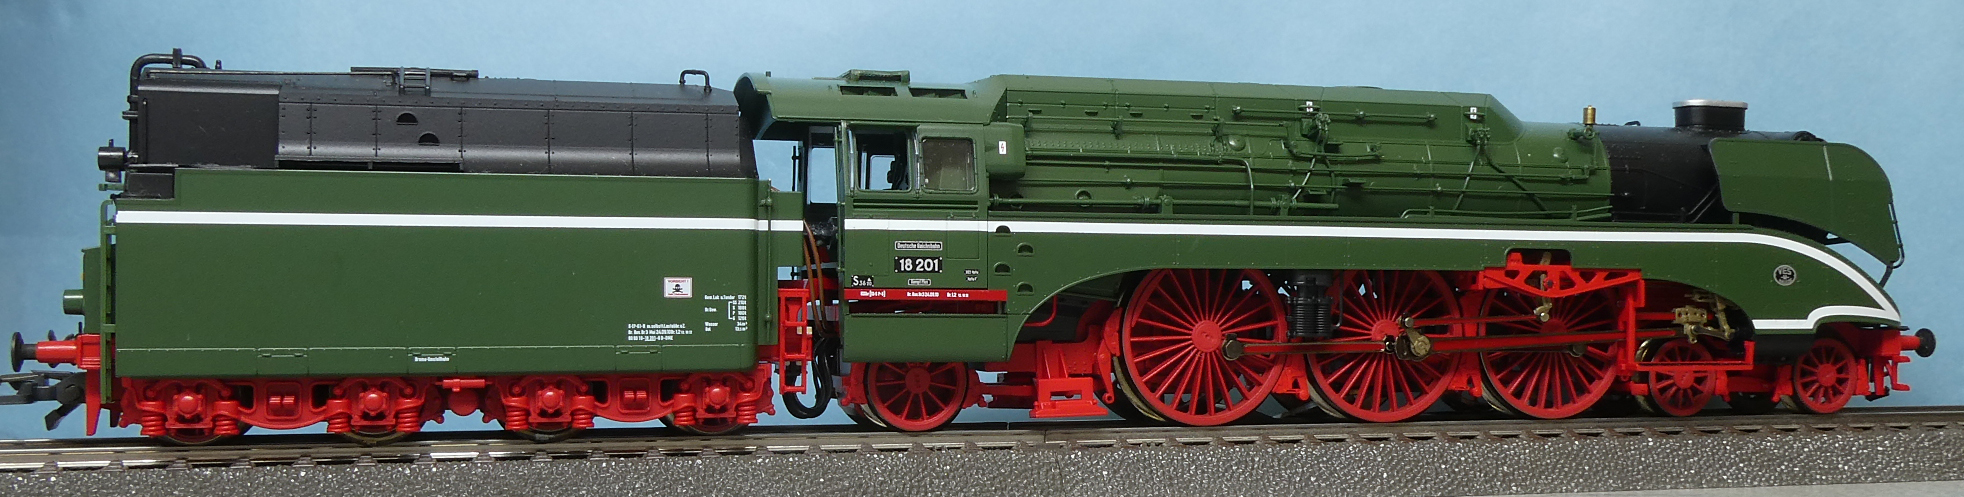 Roco HO 63194 BR 18 201 高速試験用機関車